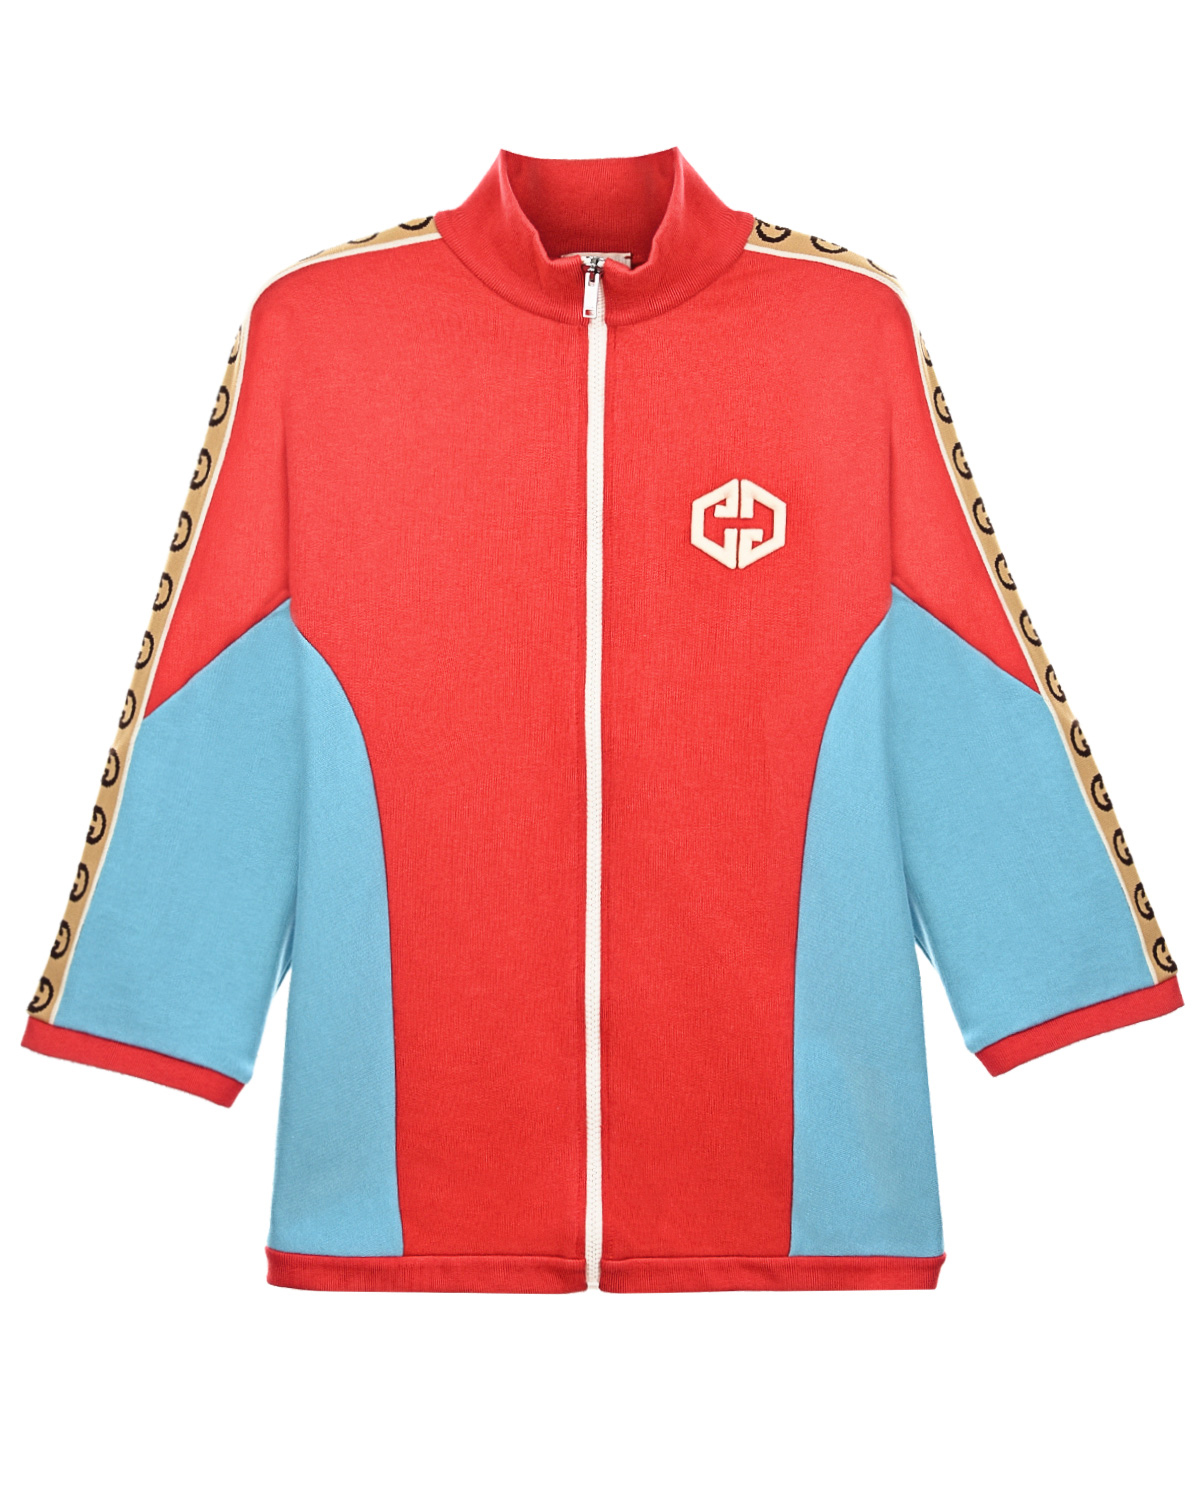 Красная спортивная куртка с голубыми вставками GUCCI детская